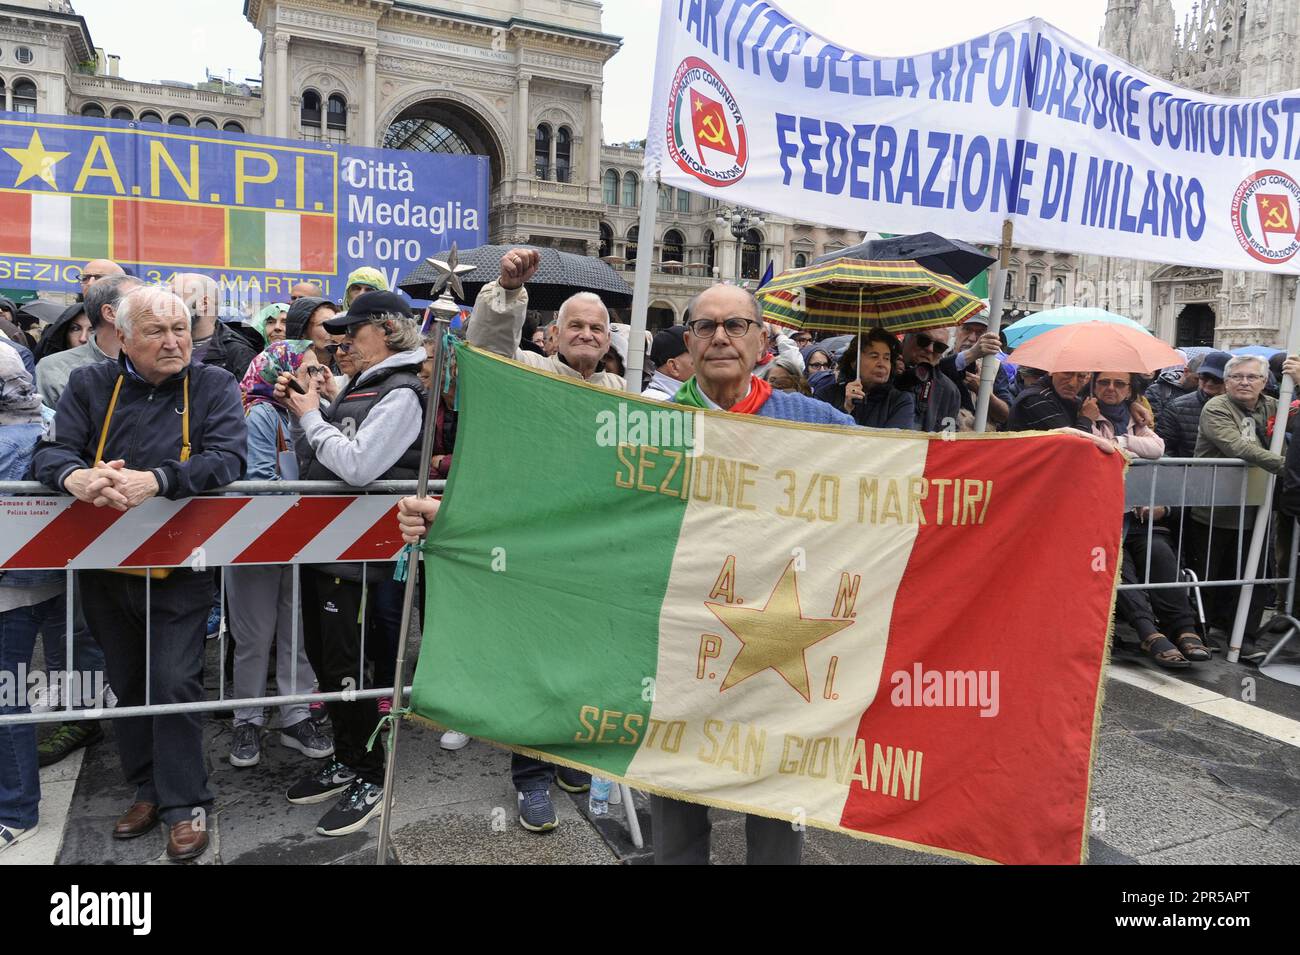 - Mailand, Demonstration vom 25. April, Jahrestag der Befreiung Italiens vom Nazifaschismus - Milano, manifestazione del 25 aprile, anniversario della Liberazione dell'Italia dal nazifascismo Stockfoto